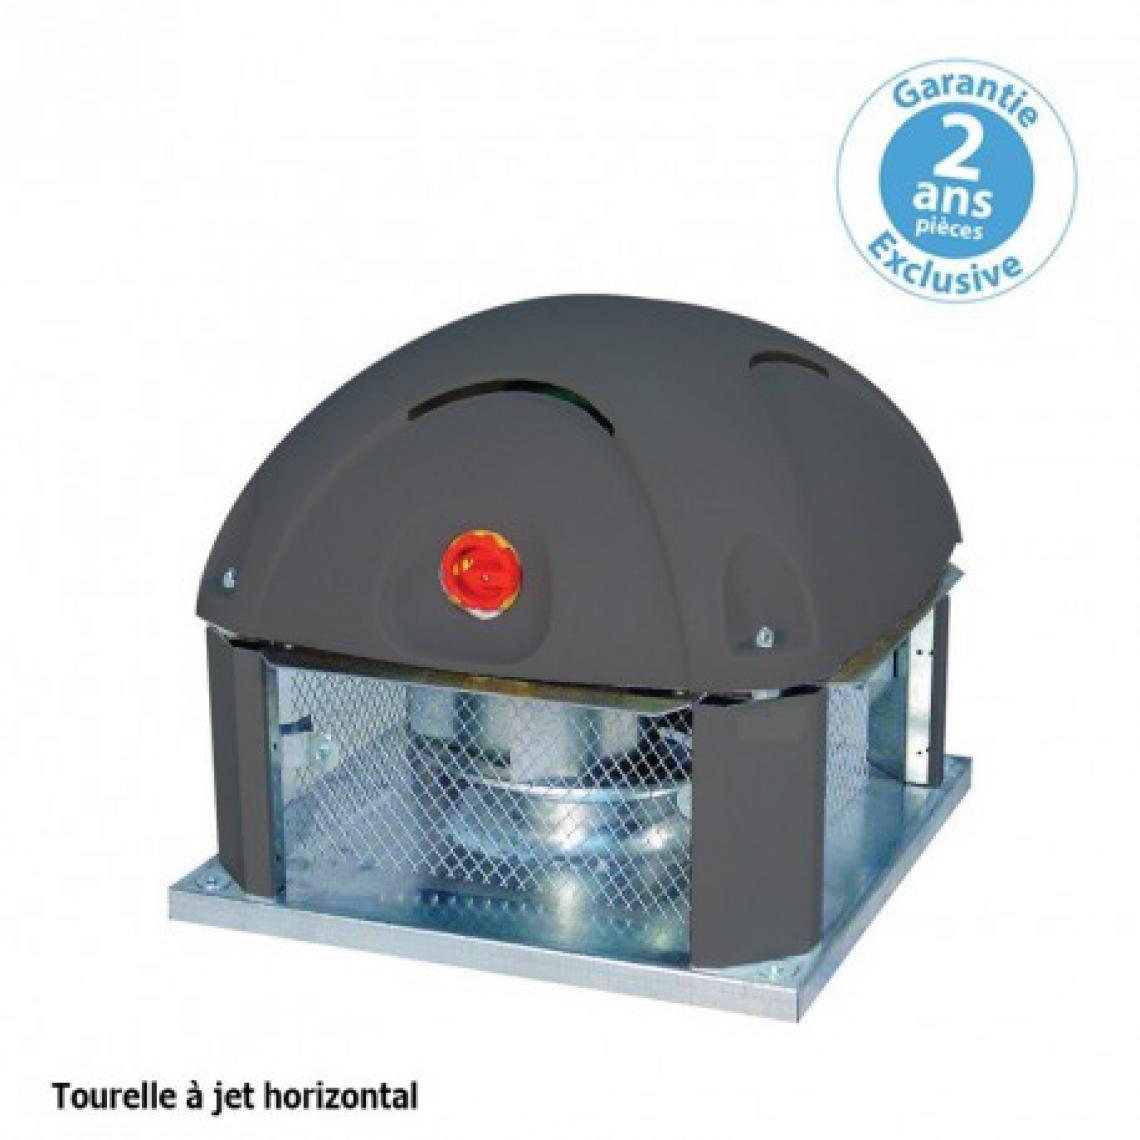 Furnotel - Tourelle 1 vitesse - triphasée - refoulement horizontal - 2000 m³ / h sous 170 Pa - - VMC, Ventilation